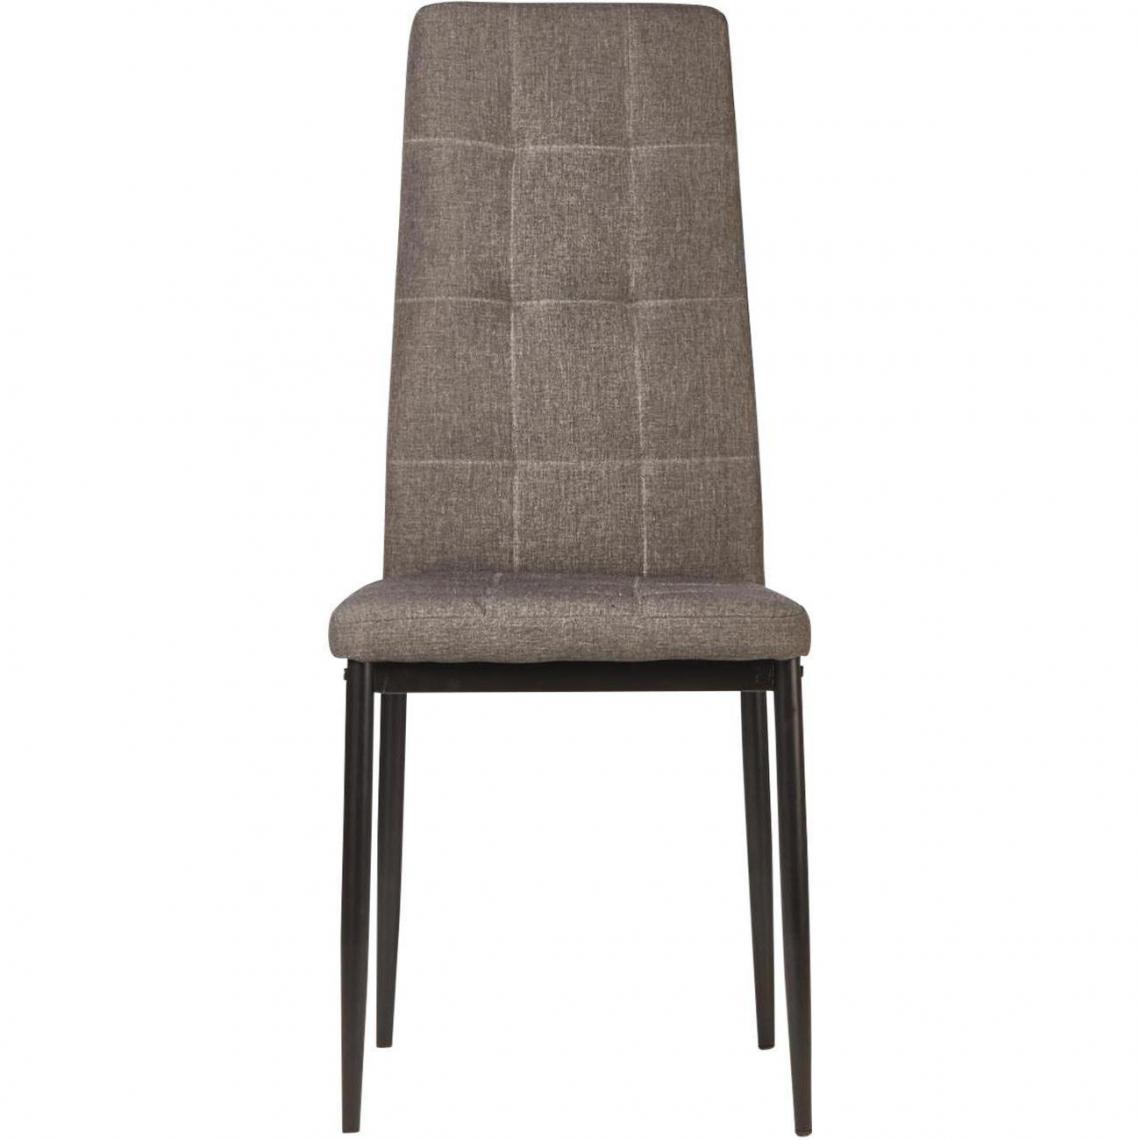 ATHM DESIGN - Lot de 4 - Chaise ROKA Gris - assise Tissu pieds Metal Noir - Chaises